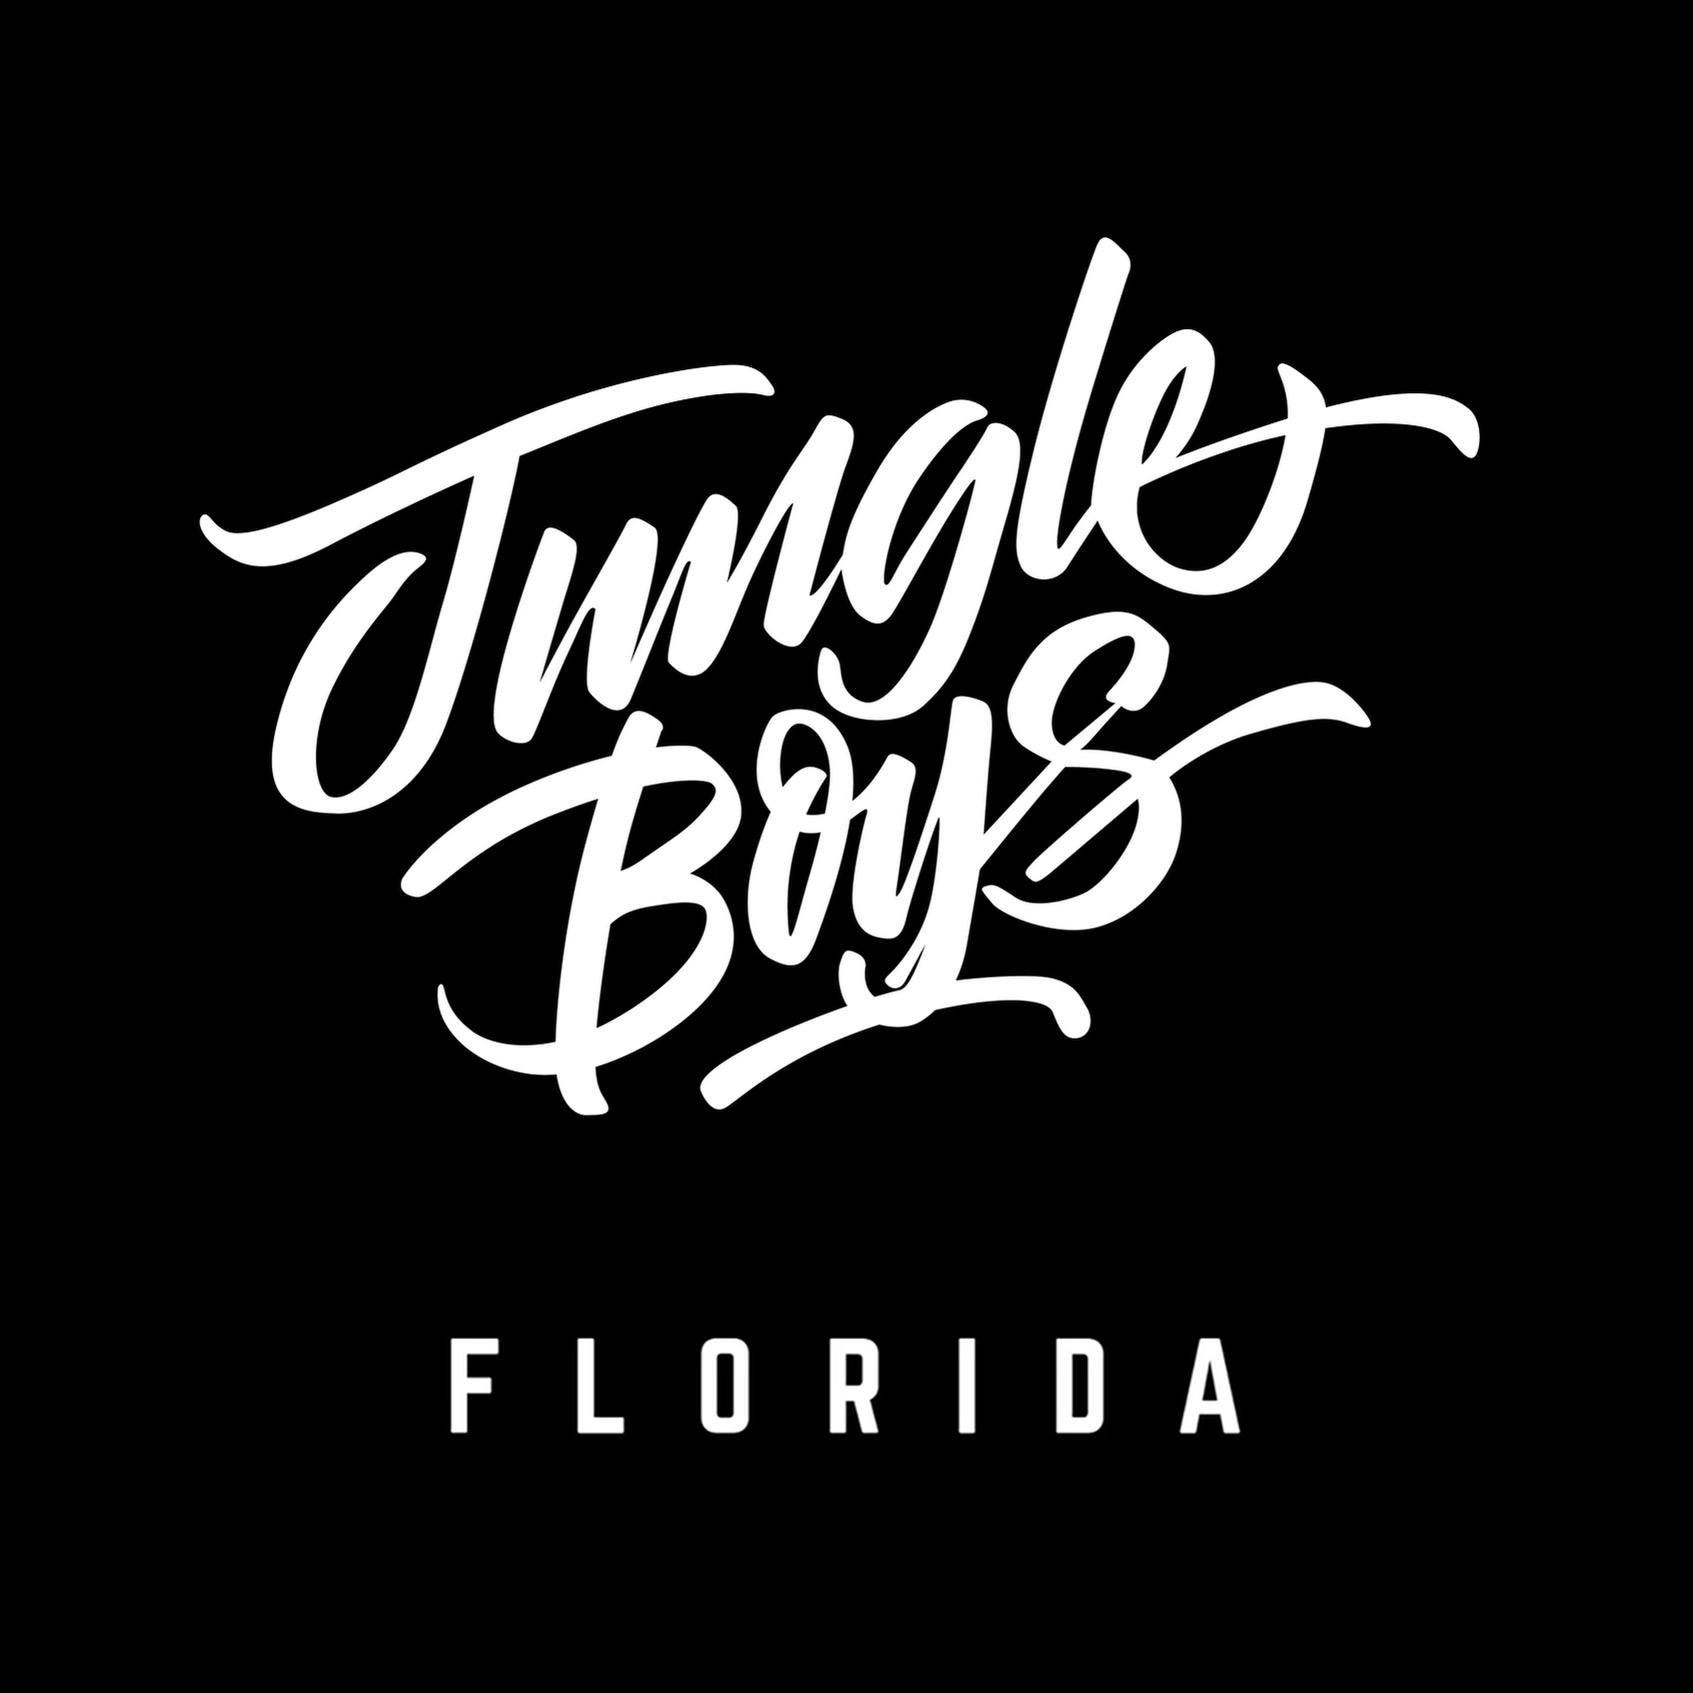 Jungle Boys Orlando logo